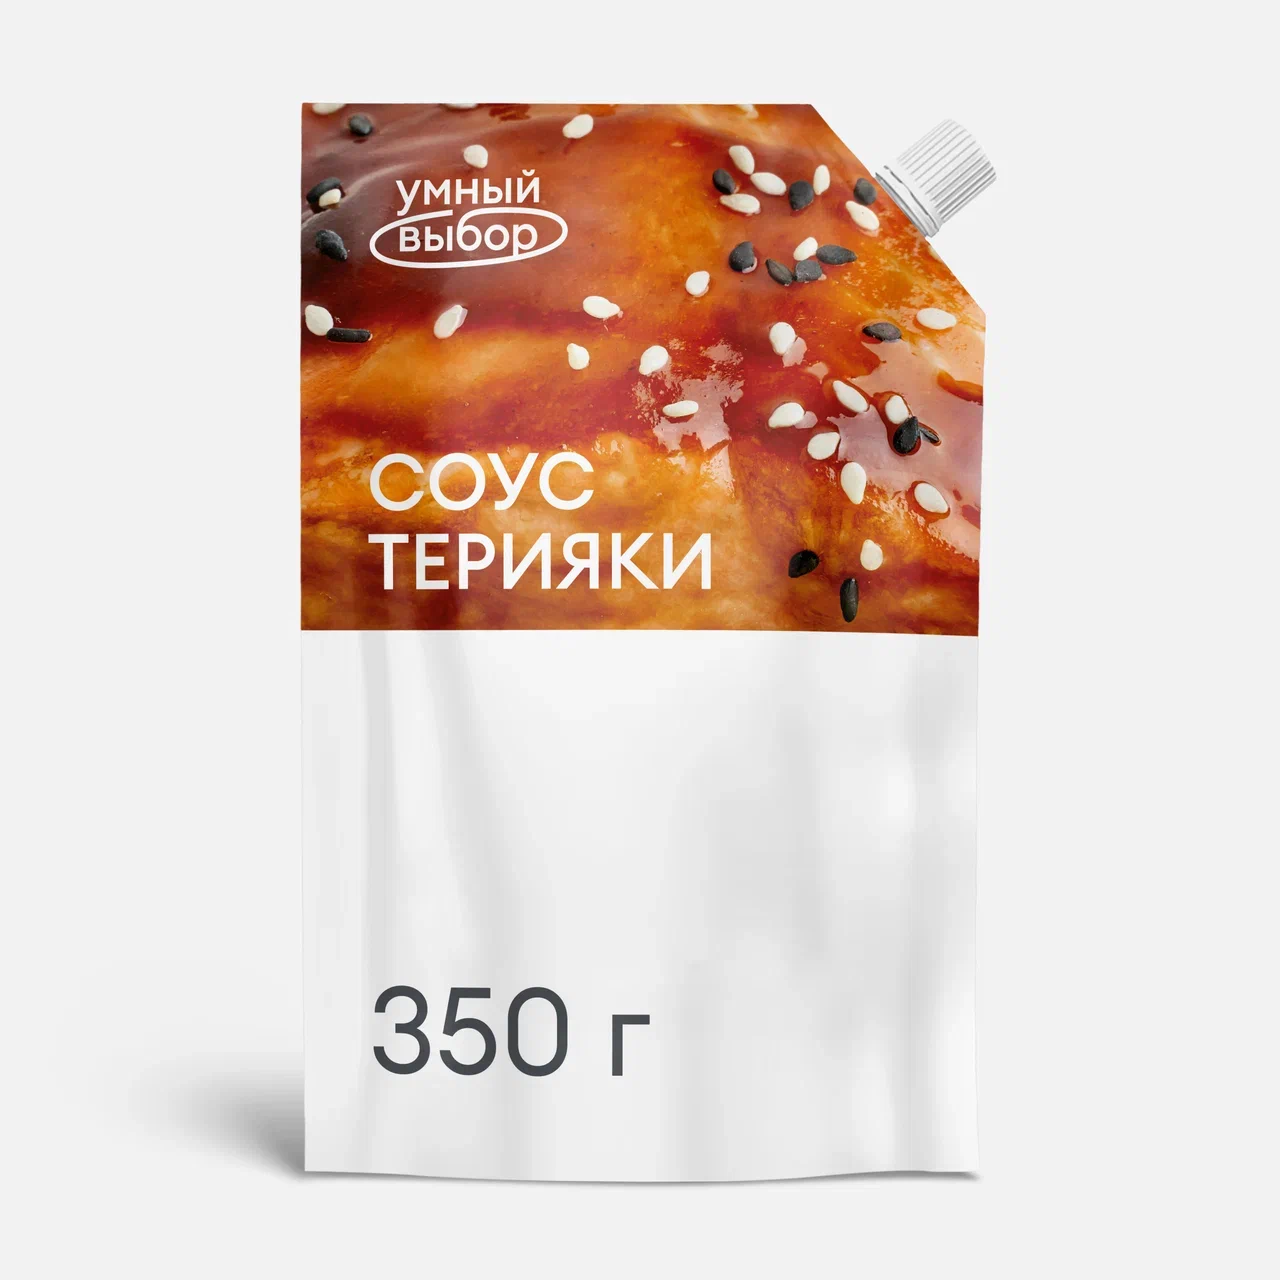 Соус Умный выбор терияки, 350 г – купить в Москве, цены в интернет-магазинах на Мегамаркет